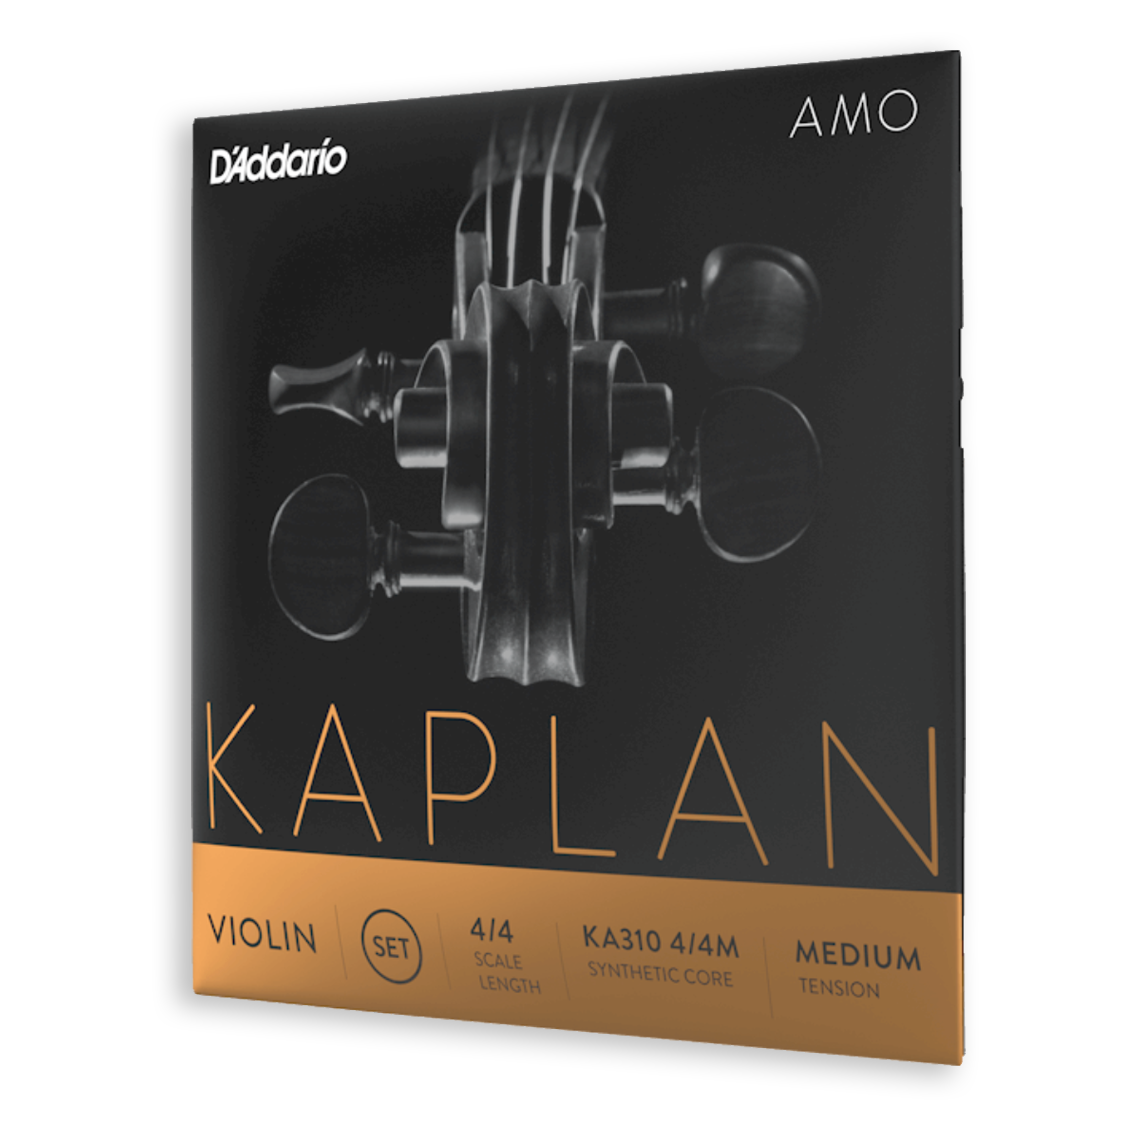 Kaplan Amo Violin E string